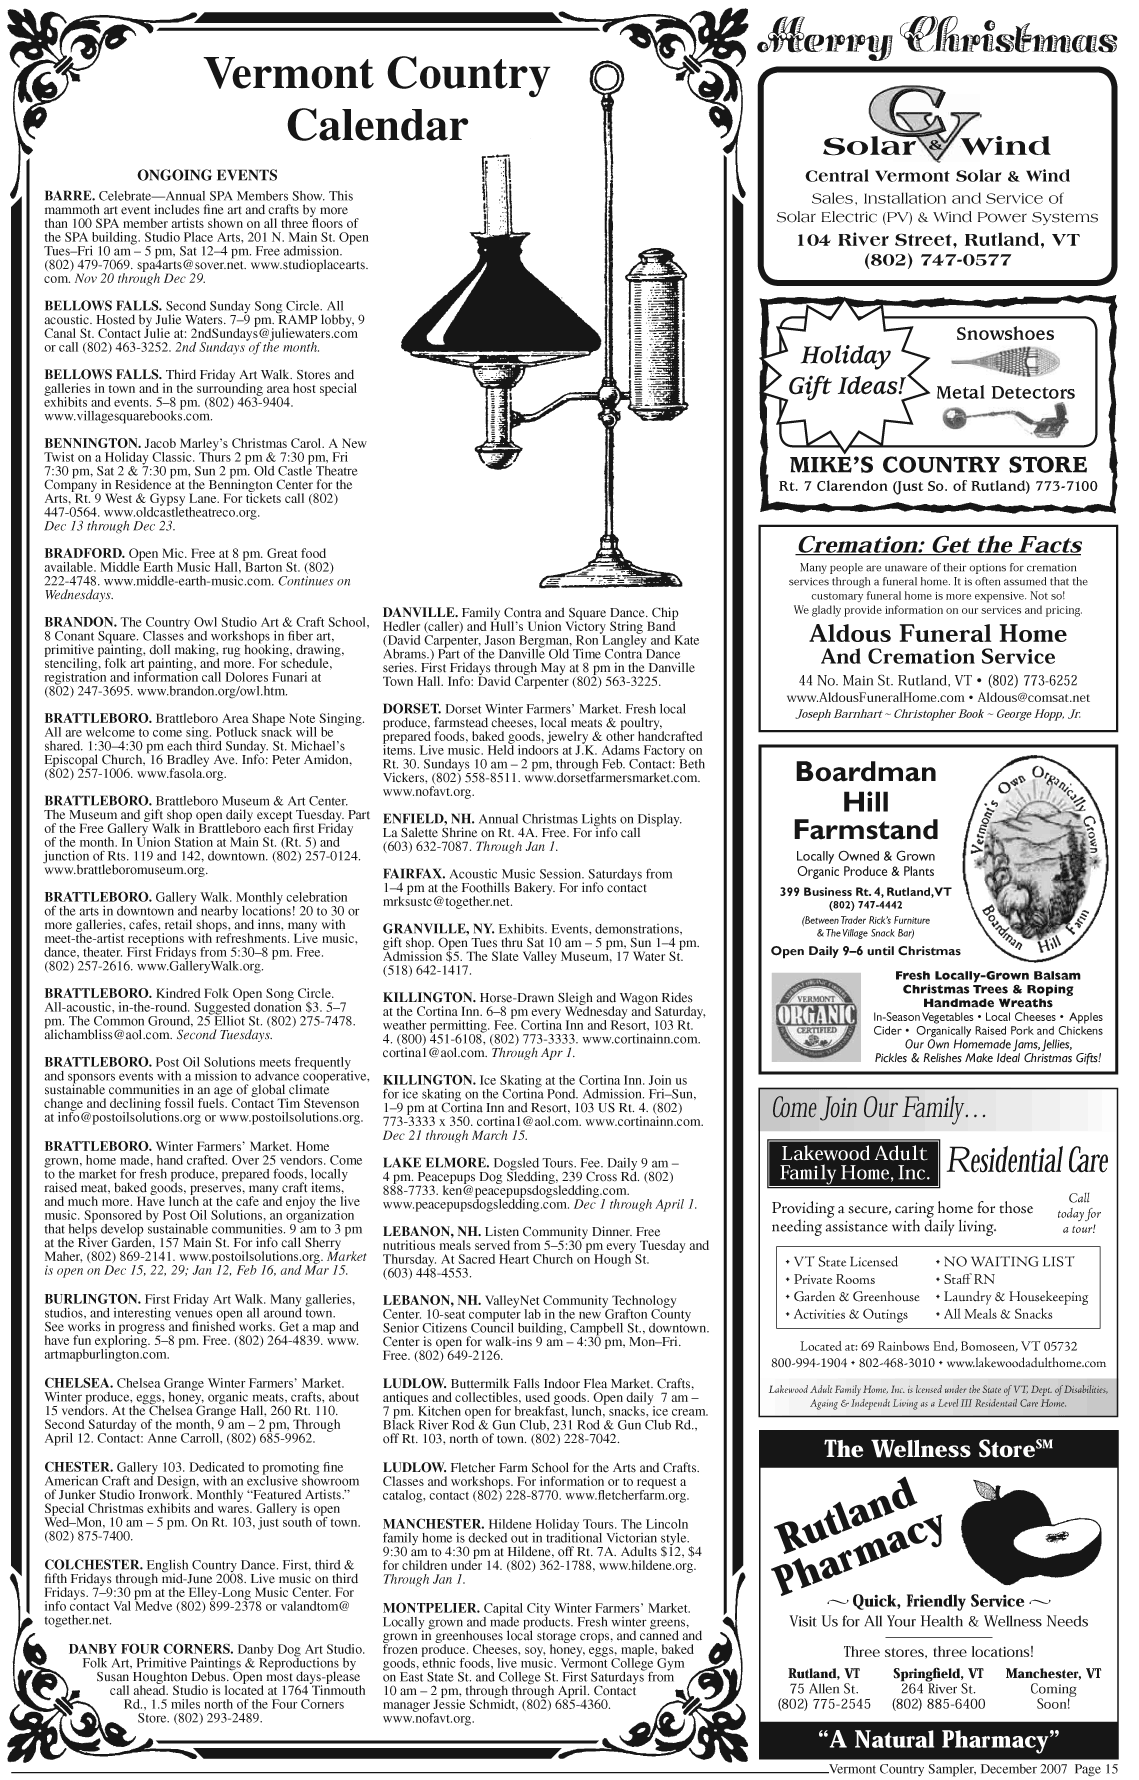 Sampler Dec 2007 Page 15